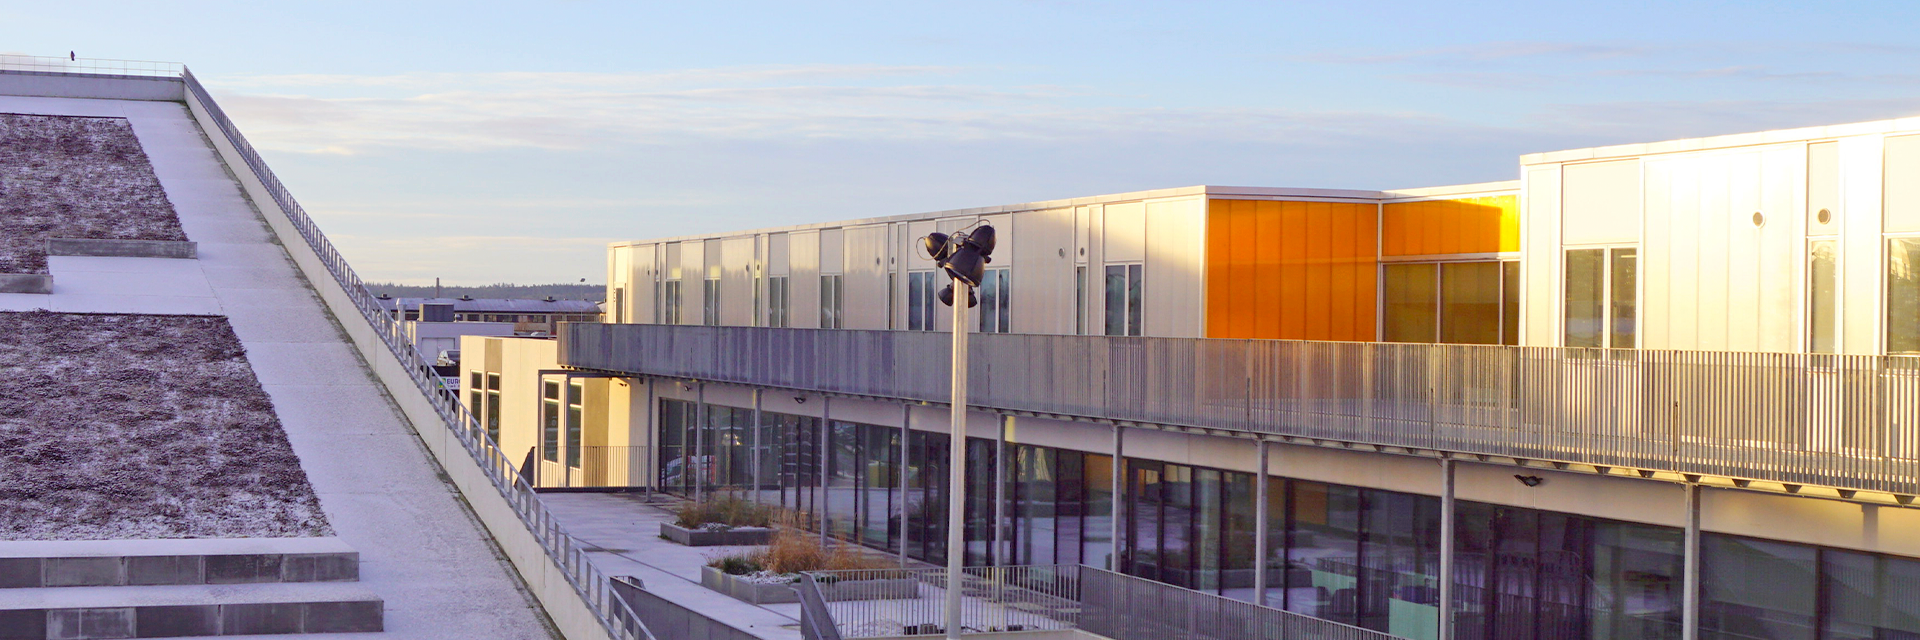 Studieboligerne til erhvervsuddannelserne på College360 ligger på skolens øverste etager